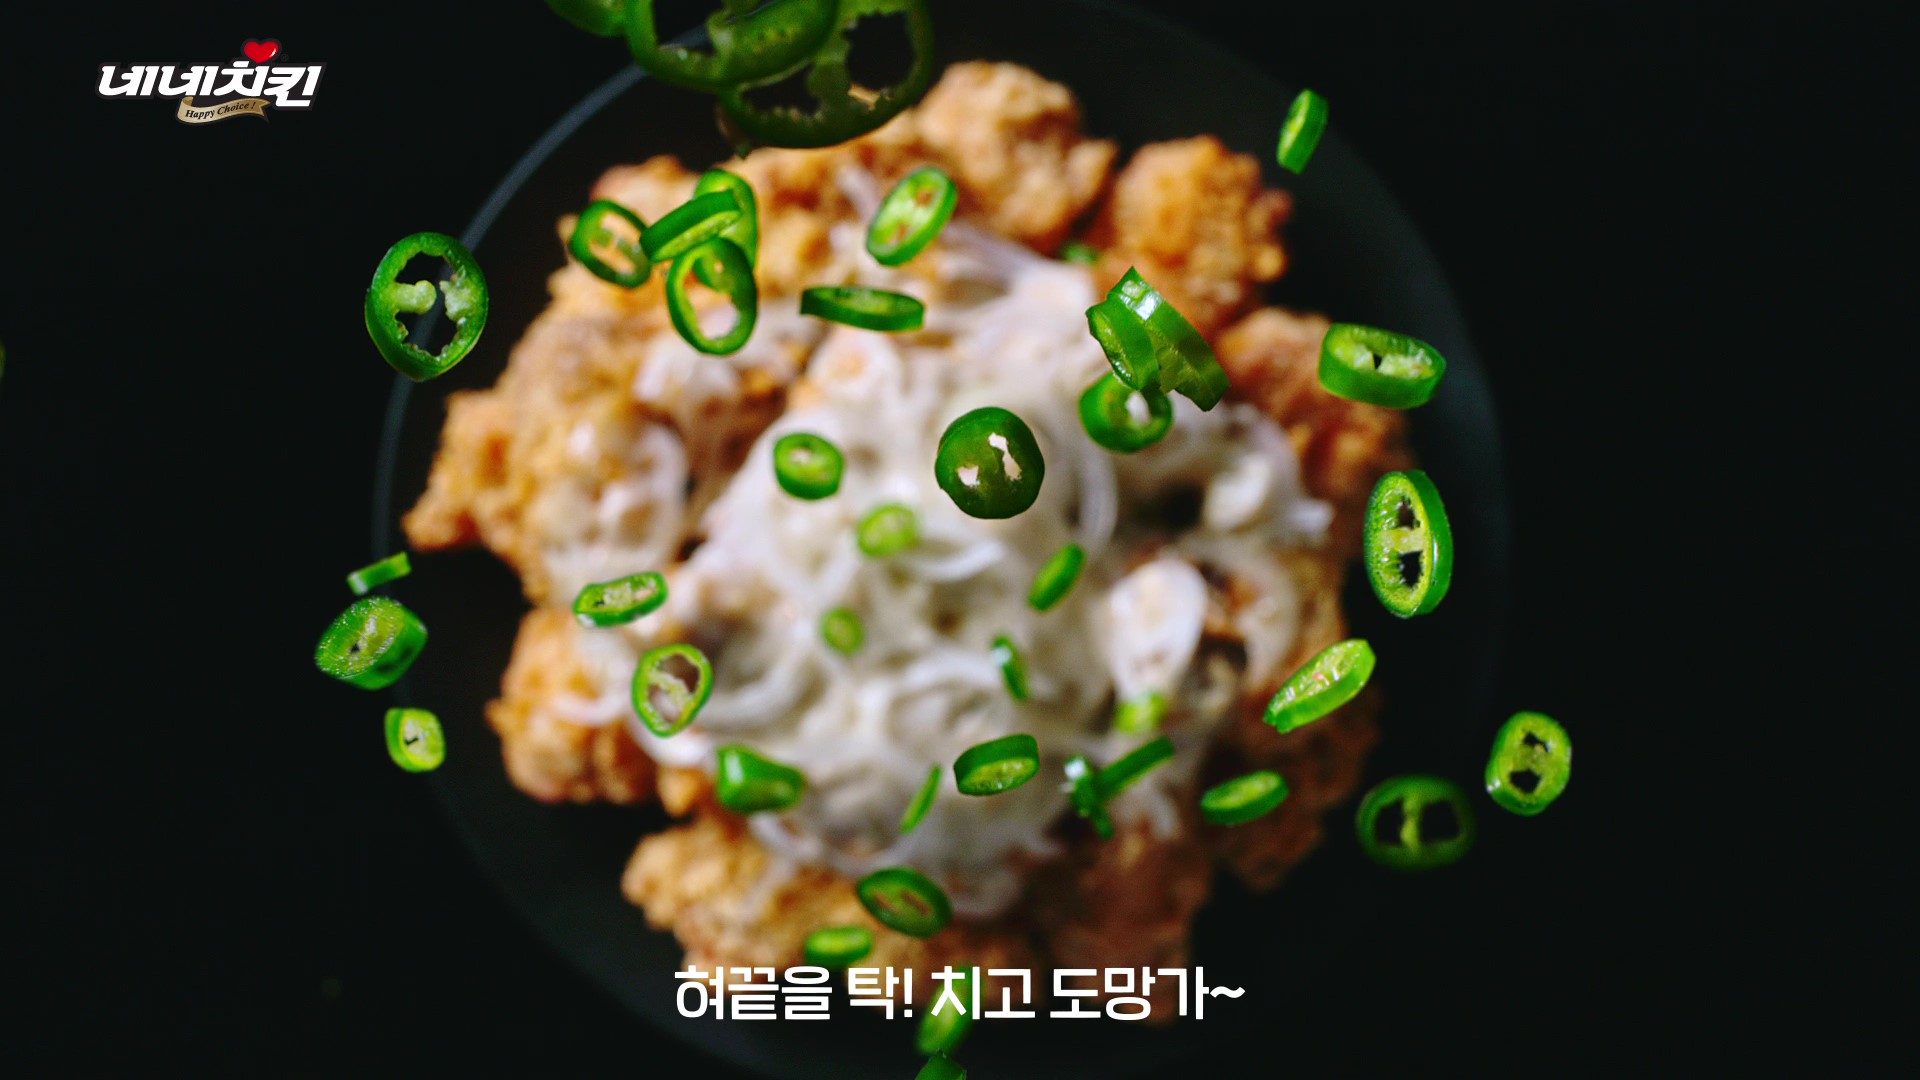 혜인식품 네네치킨 광고